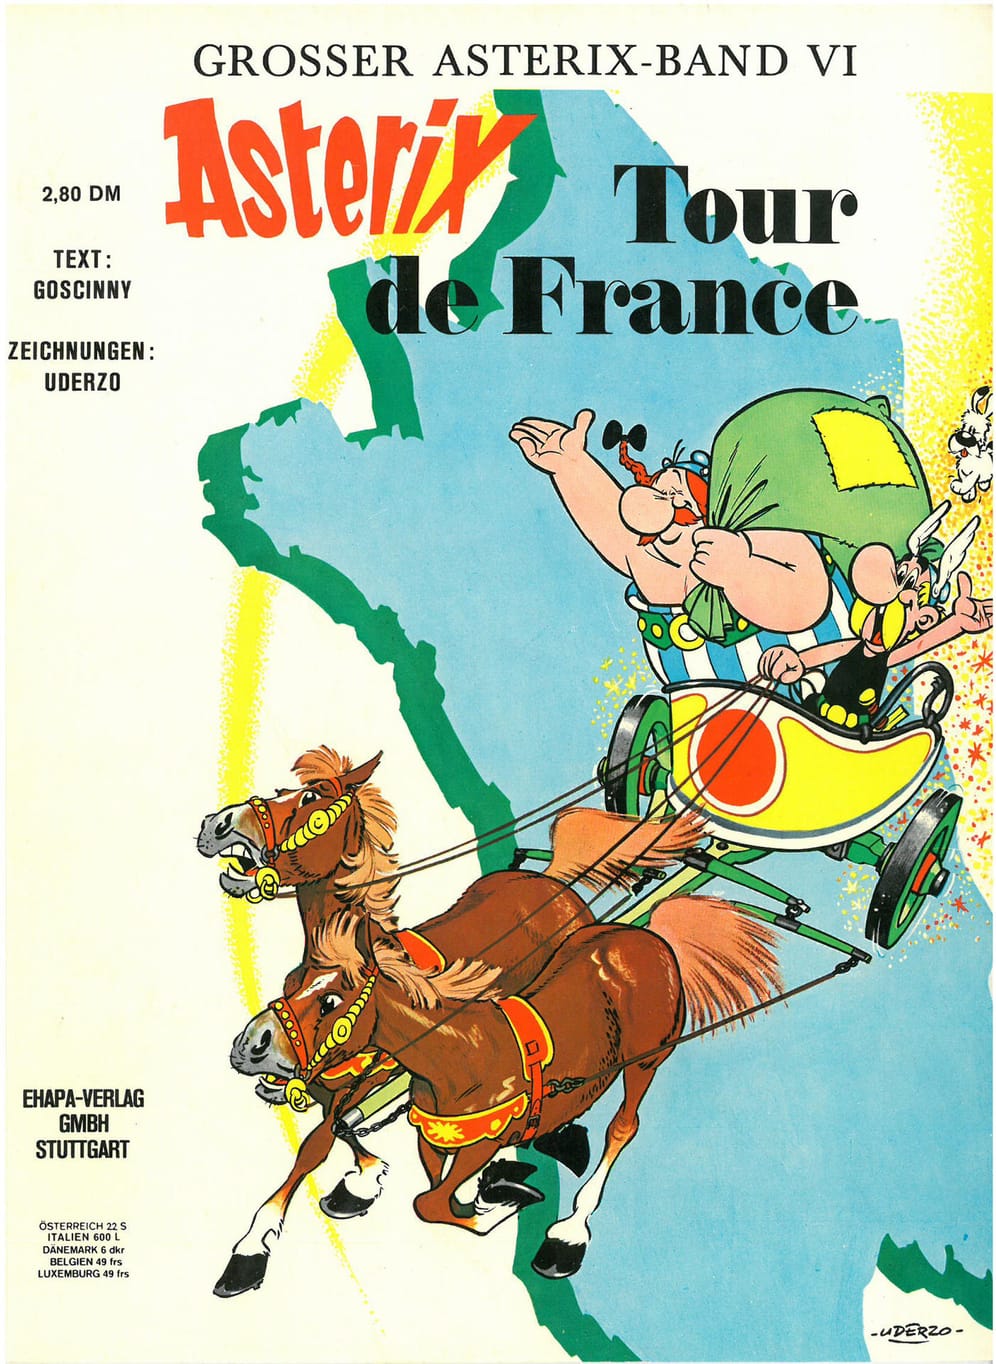 Die sechste Ausgabe: Asterix und die Tour de France. Die Römer beschließen den Bau einer Palisade rund um das gallische Dorf. Dadurch fühlen sich die Gallier herausgefordert und Asterix wettet, trotz dieser Maßnahme eine Reise durch ganz Gallien unternehmen zu können. Von jeder Etappe will er eine Spezialität mitbringen. Das Abenteuer "Tour de France" beginnt.